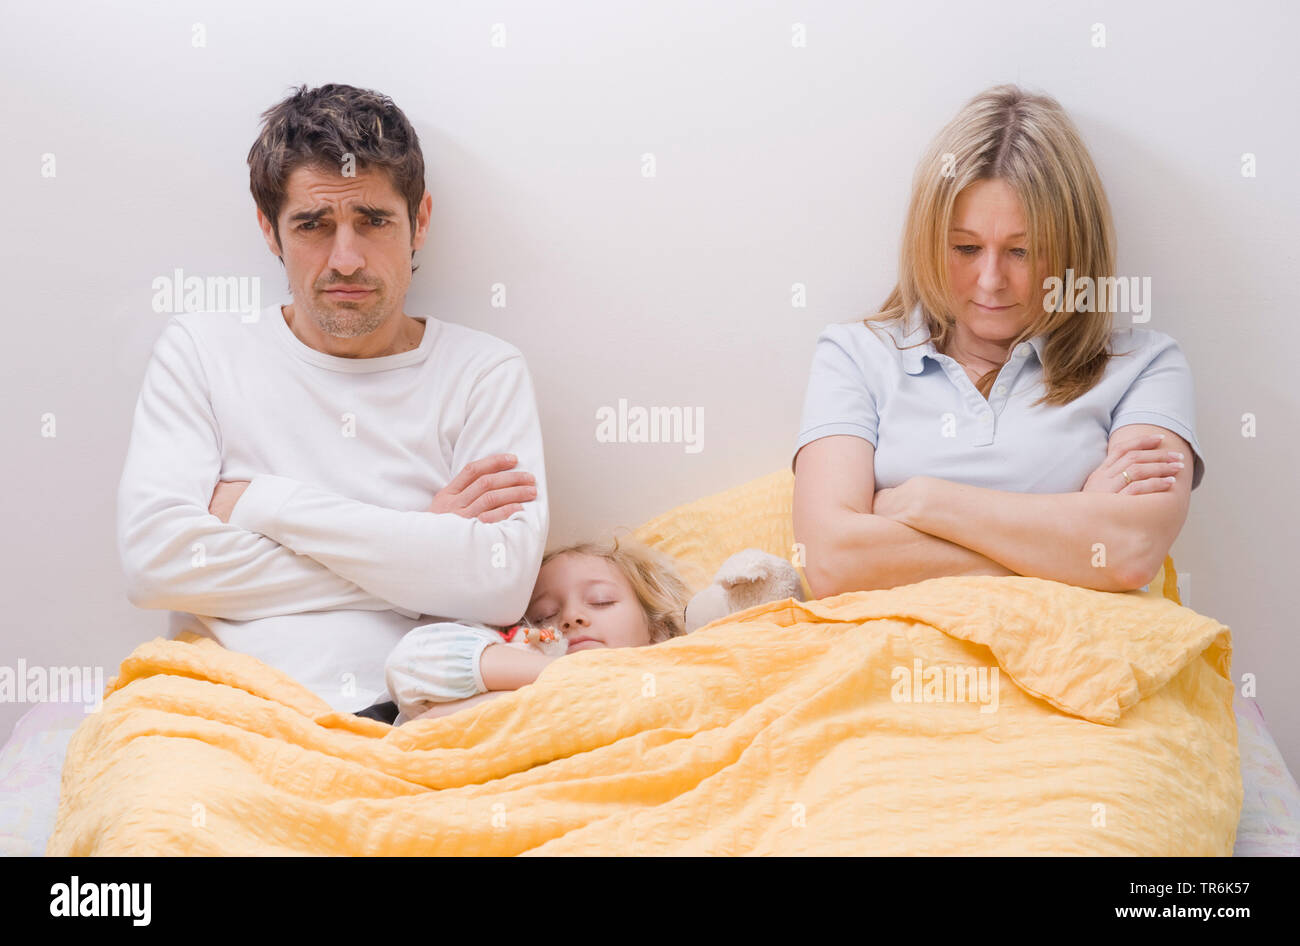 daughter sleeping between parents in bed Stock Photo